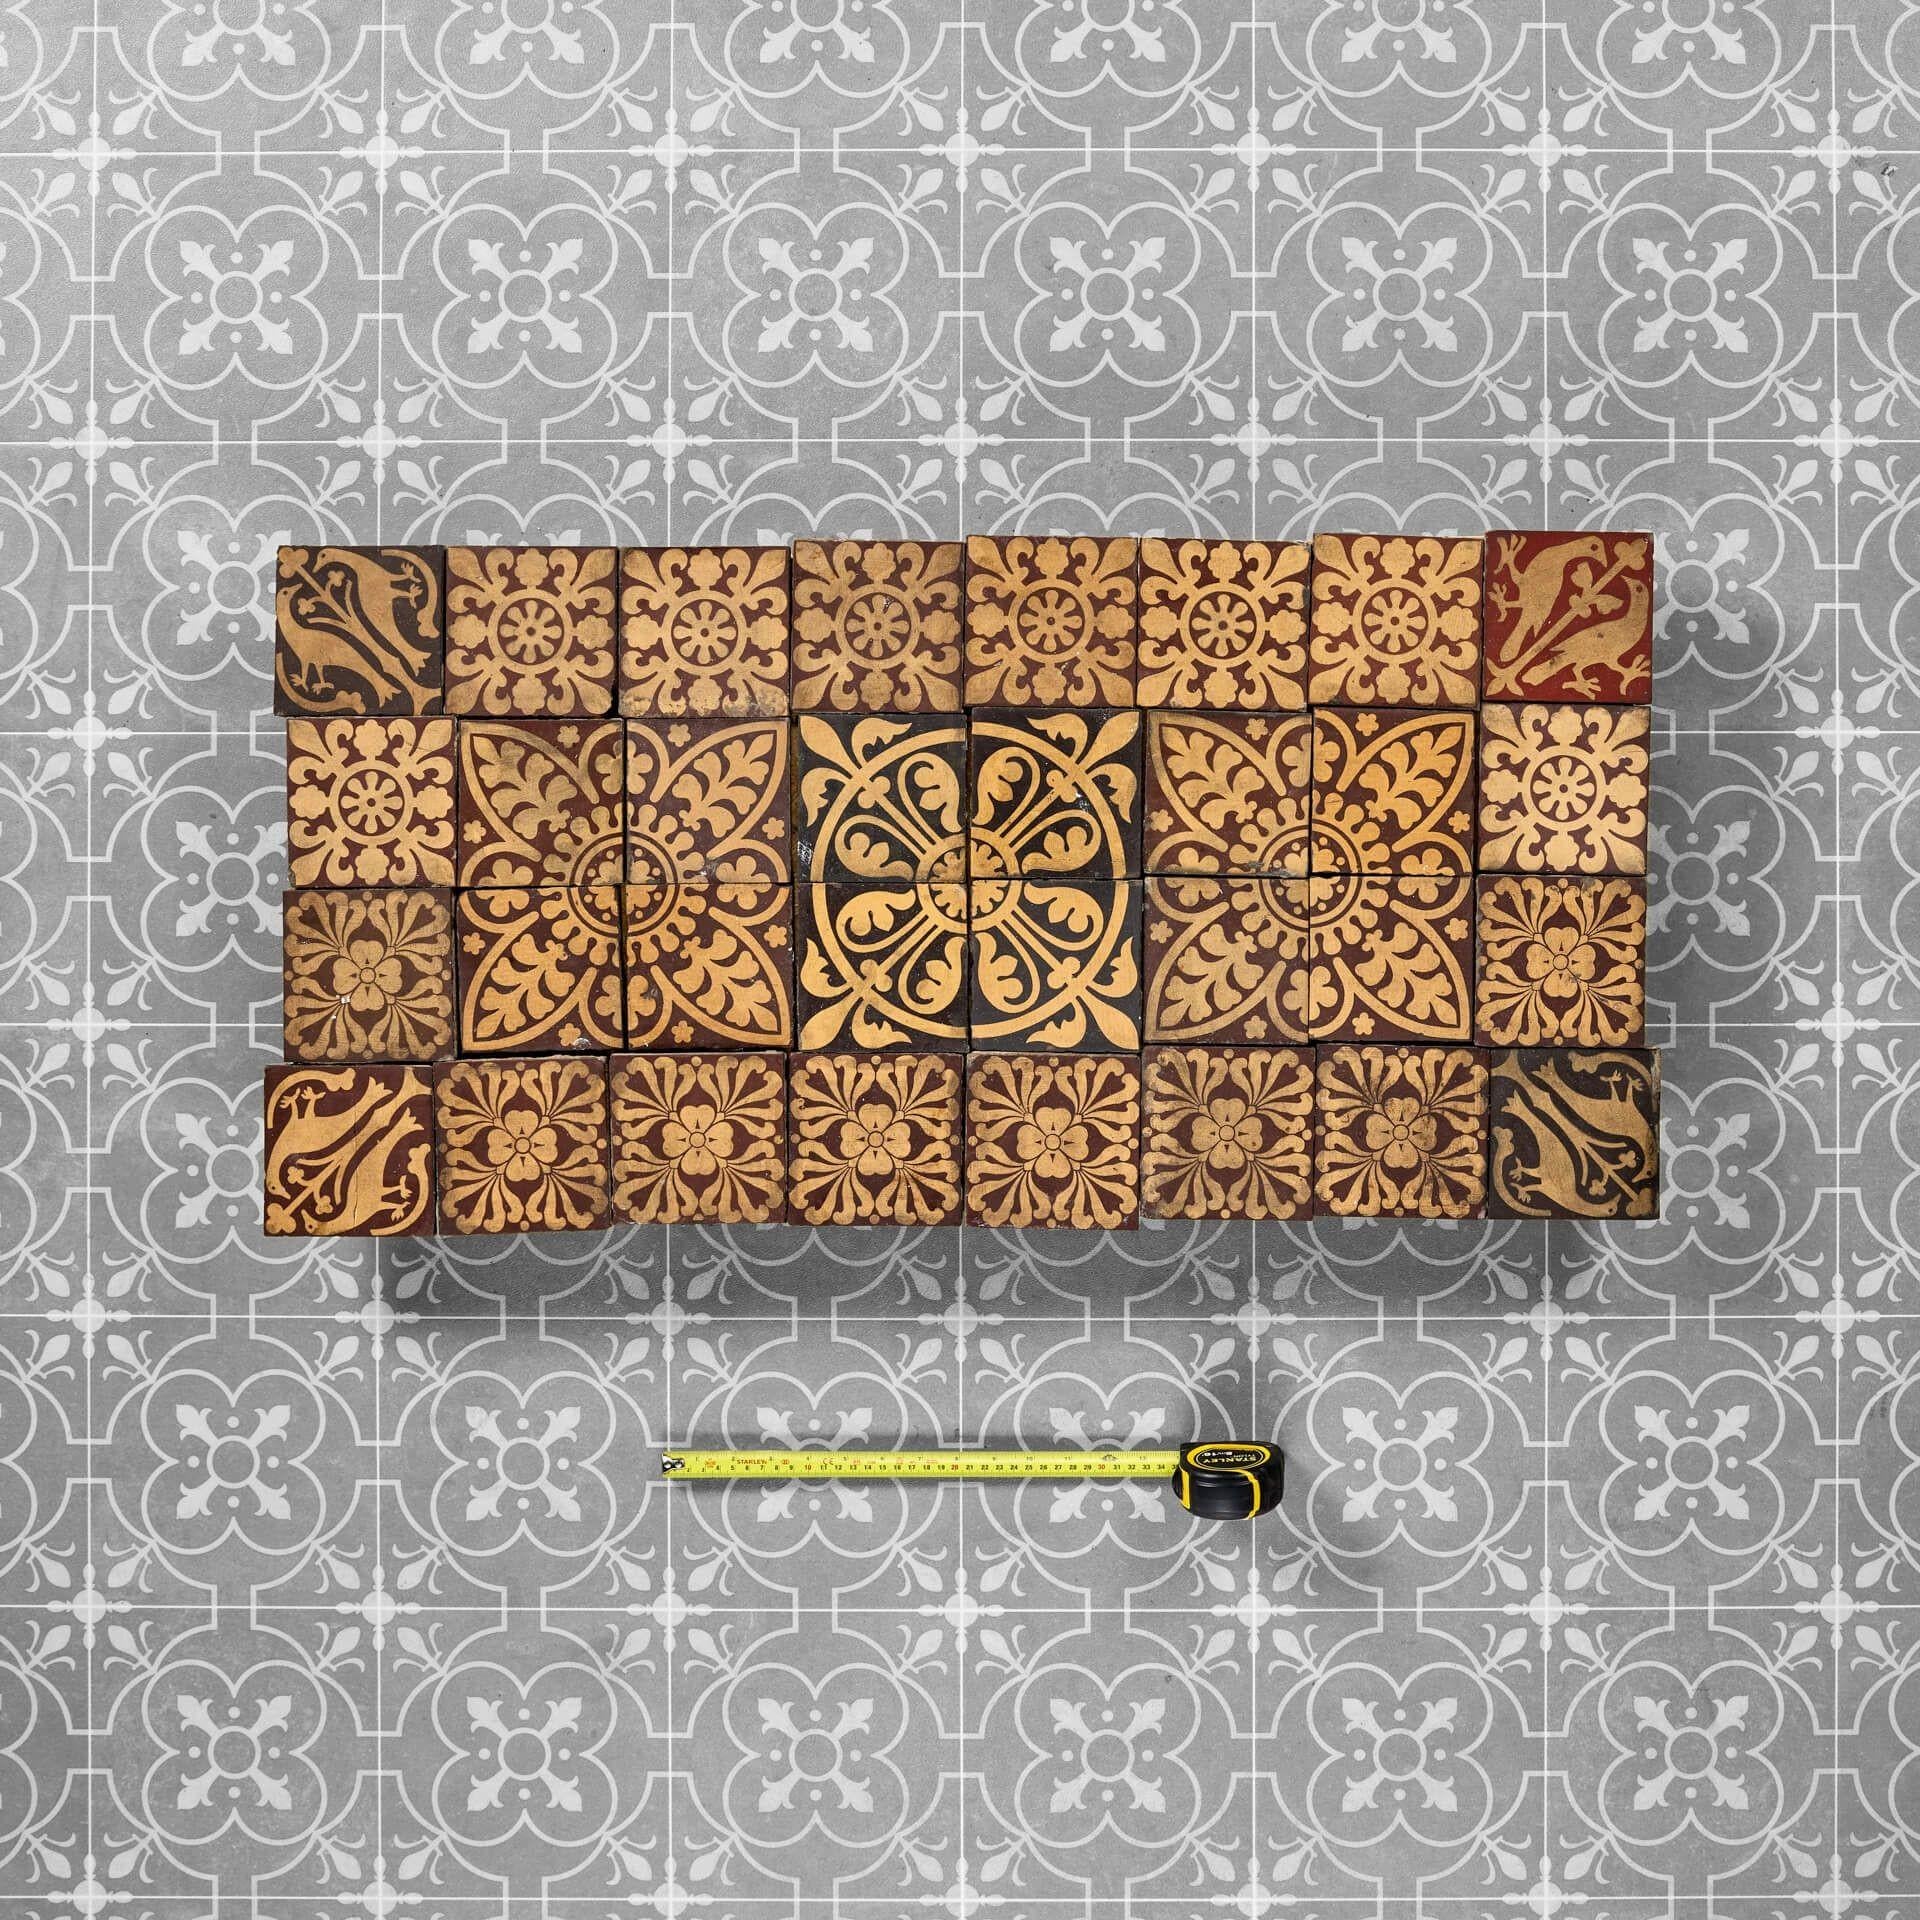 Un ensemble de 32 carreaux de Minton récupérés, idéal pour un dosseret de carreaux anciens, un sol d'entrée ou un foyer de cheminée dans un cottage d'époque ou une propriété de l'ère victorienne.

L'ensemble comprend divers motifs de carreaux